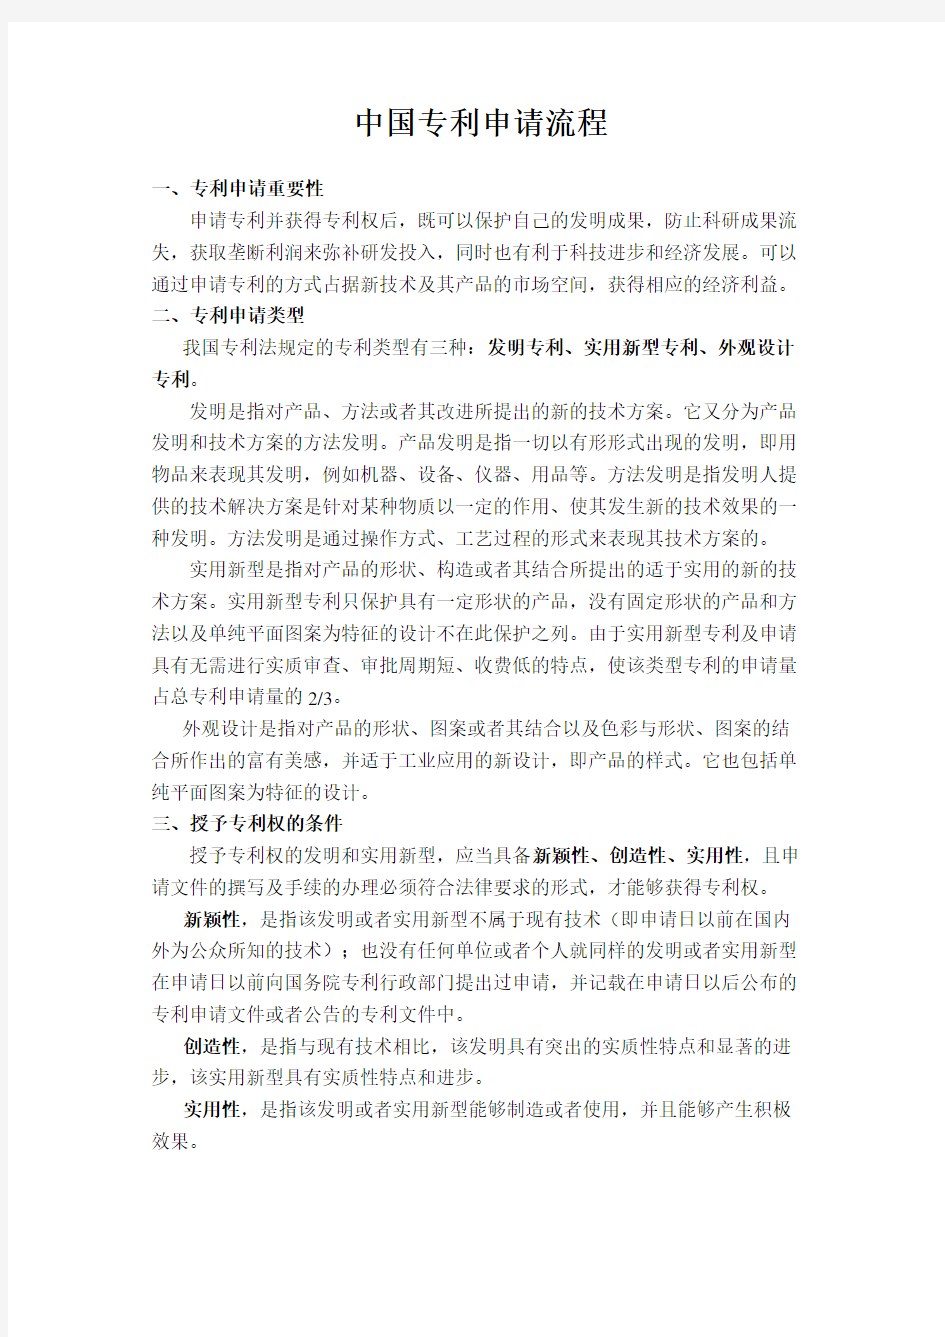 中国专利申请流程